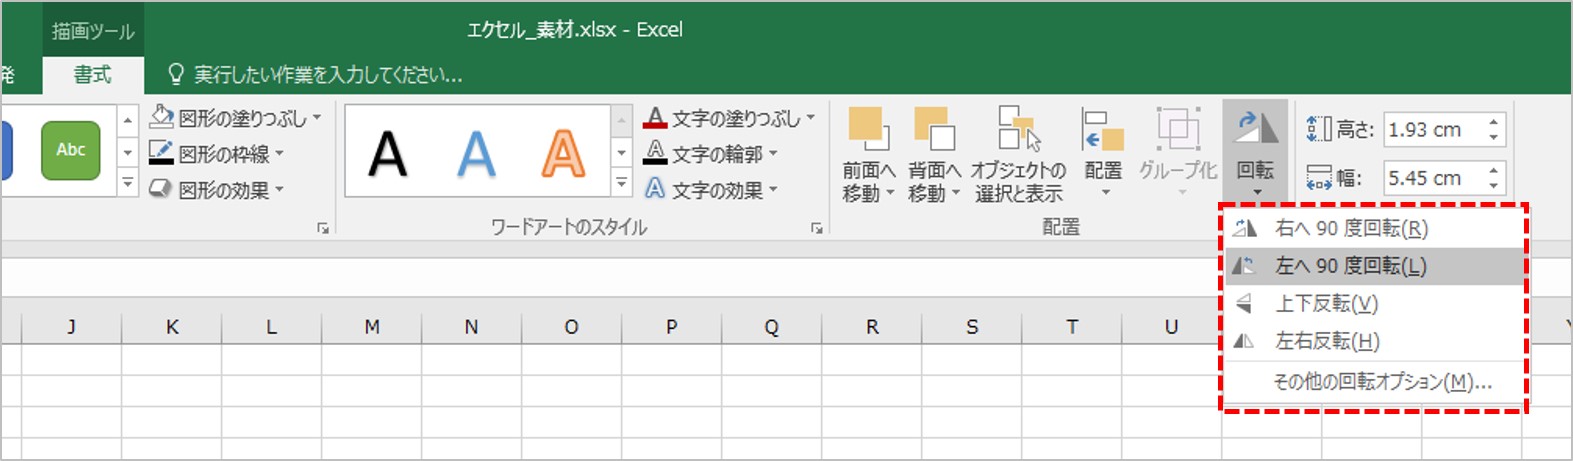 Excel エクセル 術 矢印をまっすぐ引くには 矢印の使い方をマスターしよう リクナビnextジャーナル